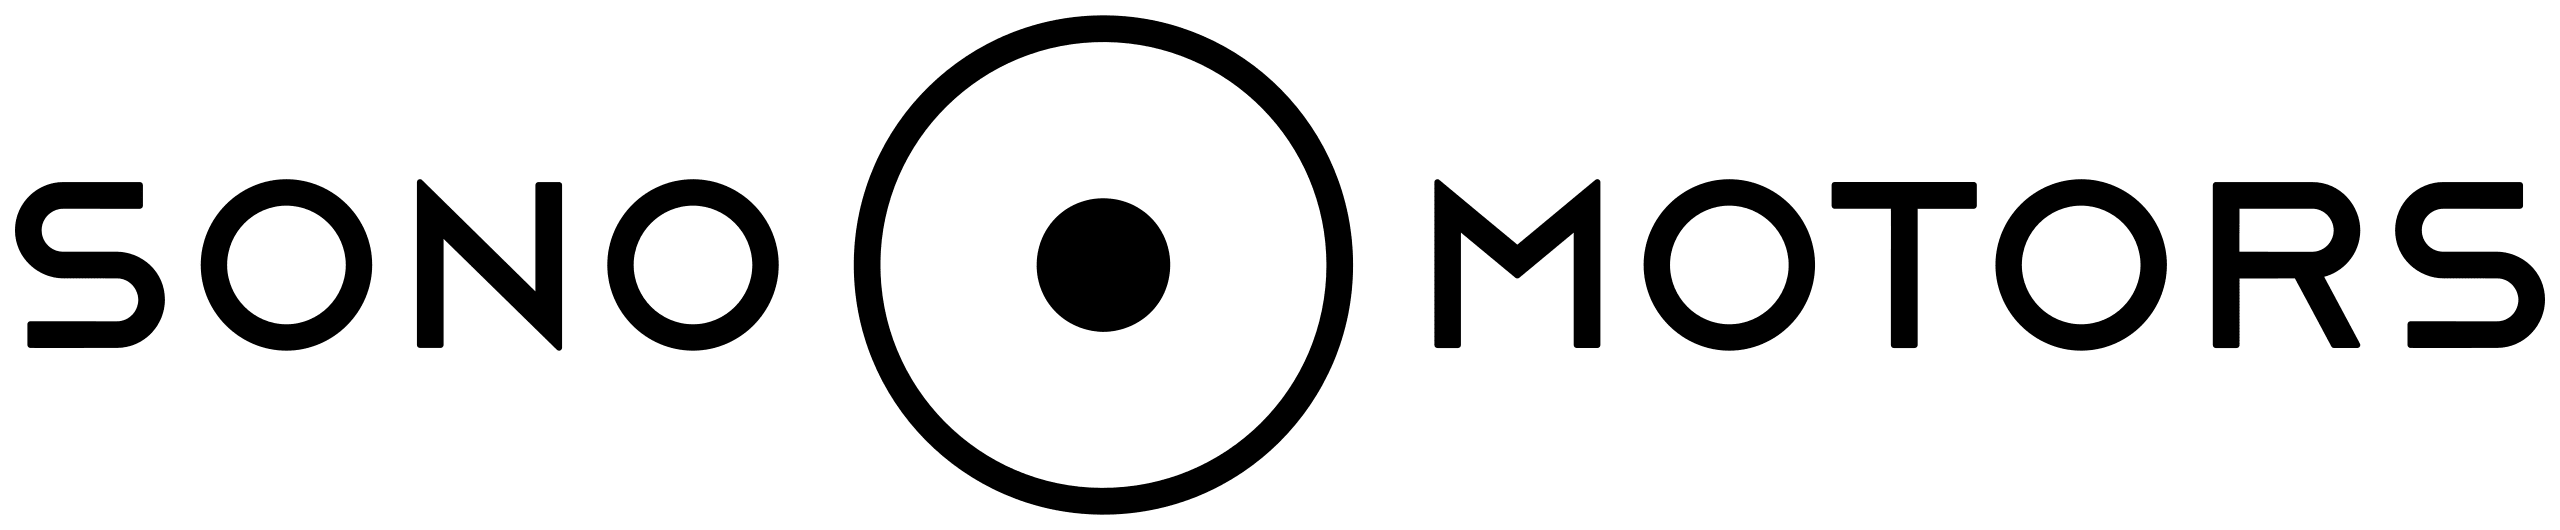 Sono Motors-logo